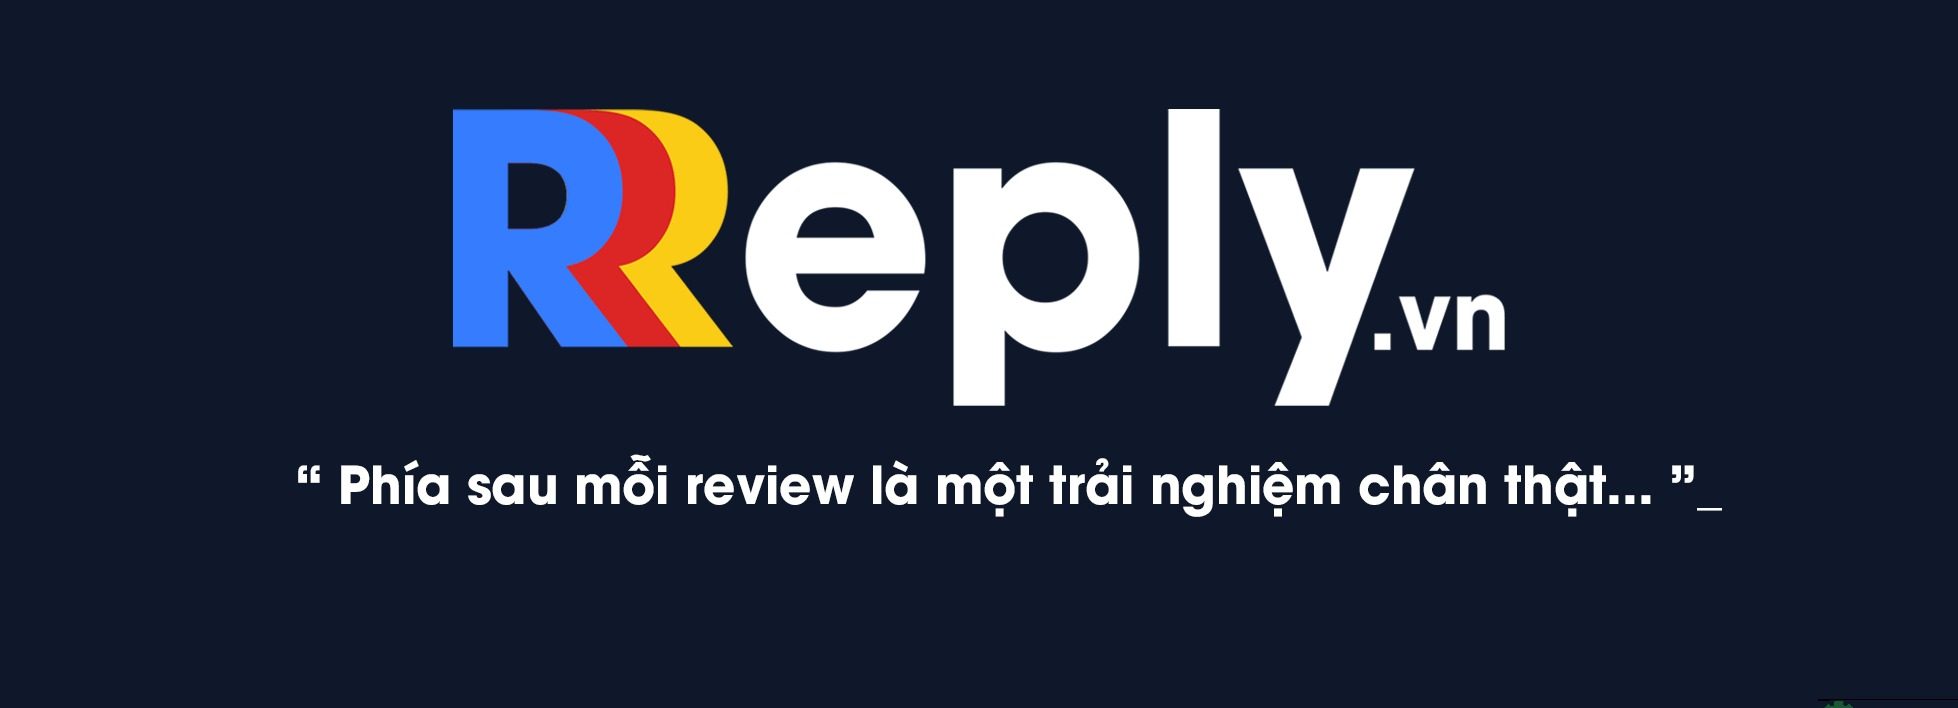 Reply.vn - Trang web review công ty được đánh giá cao